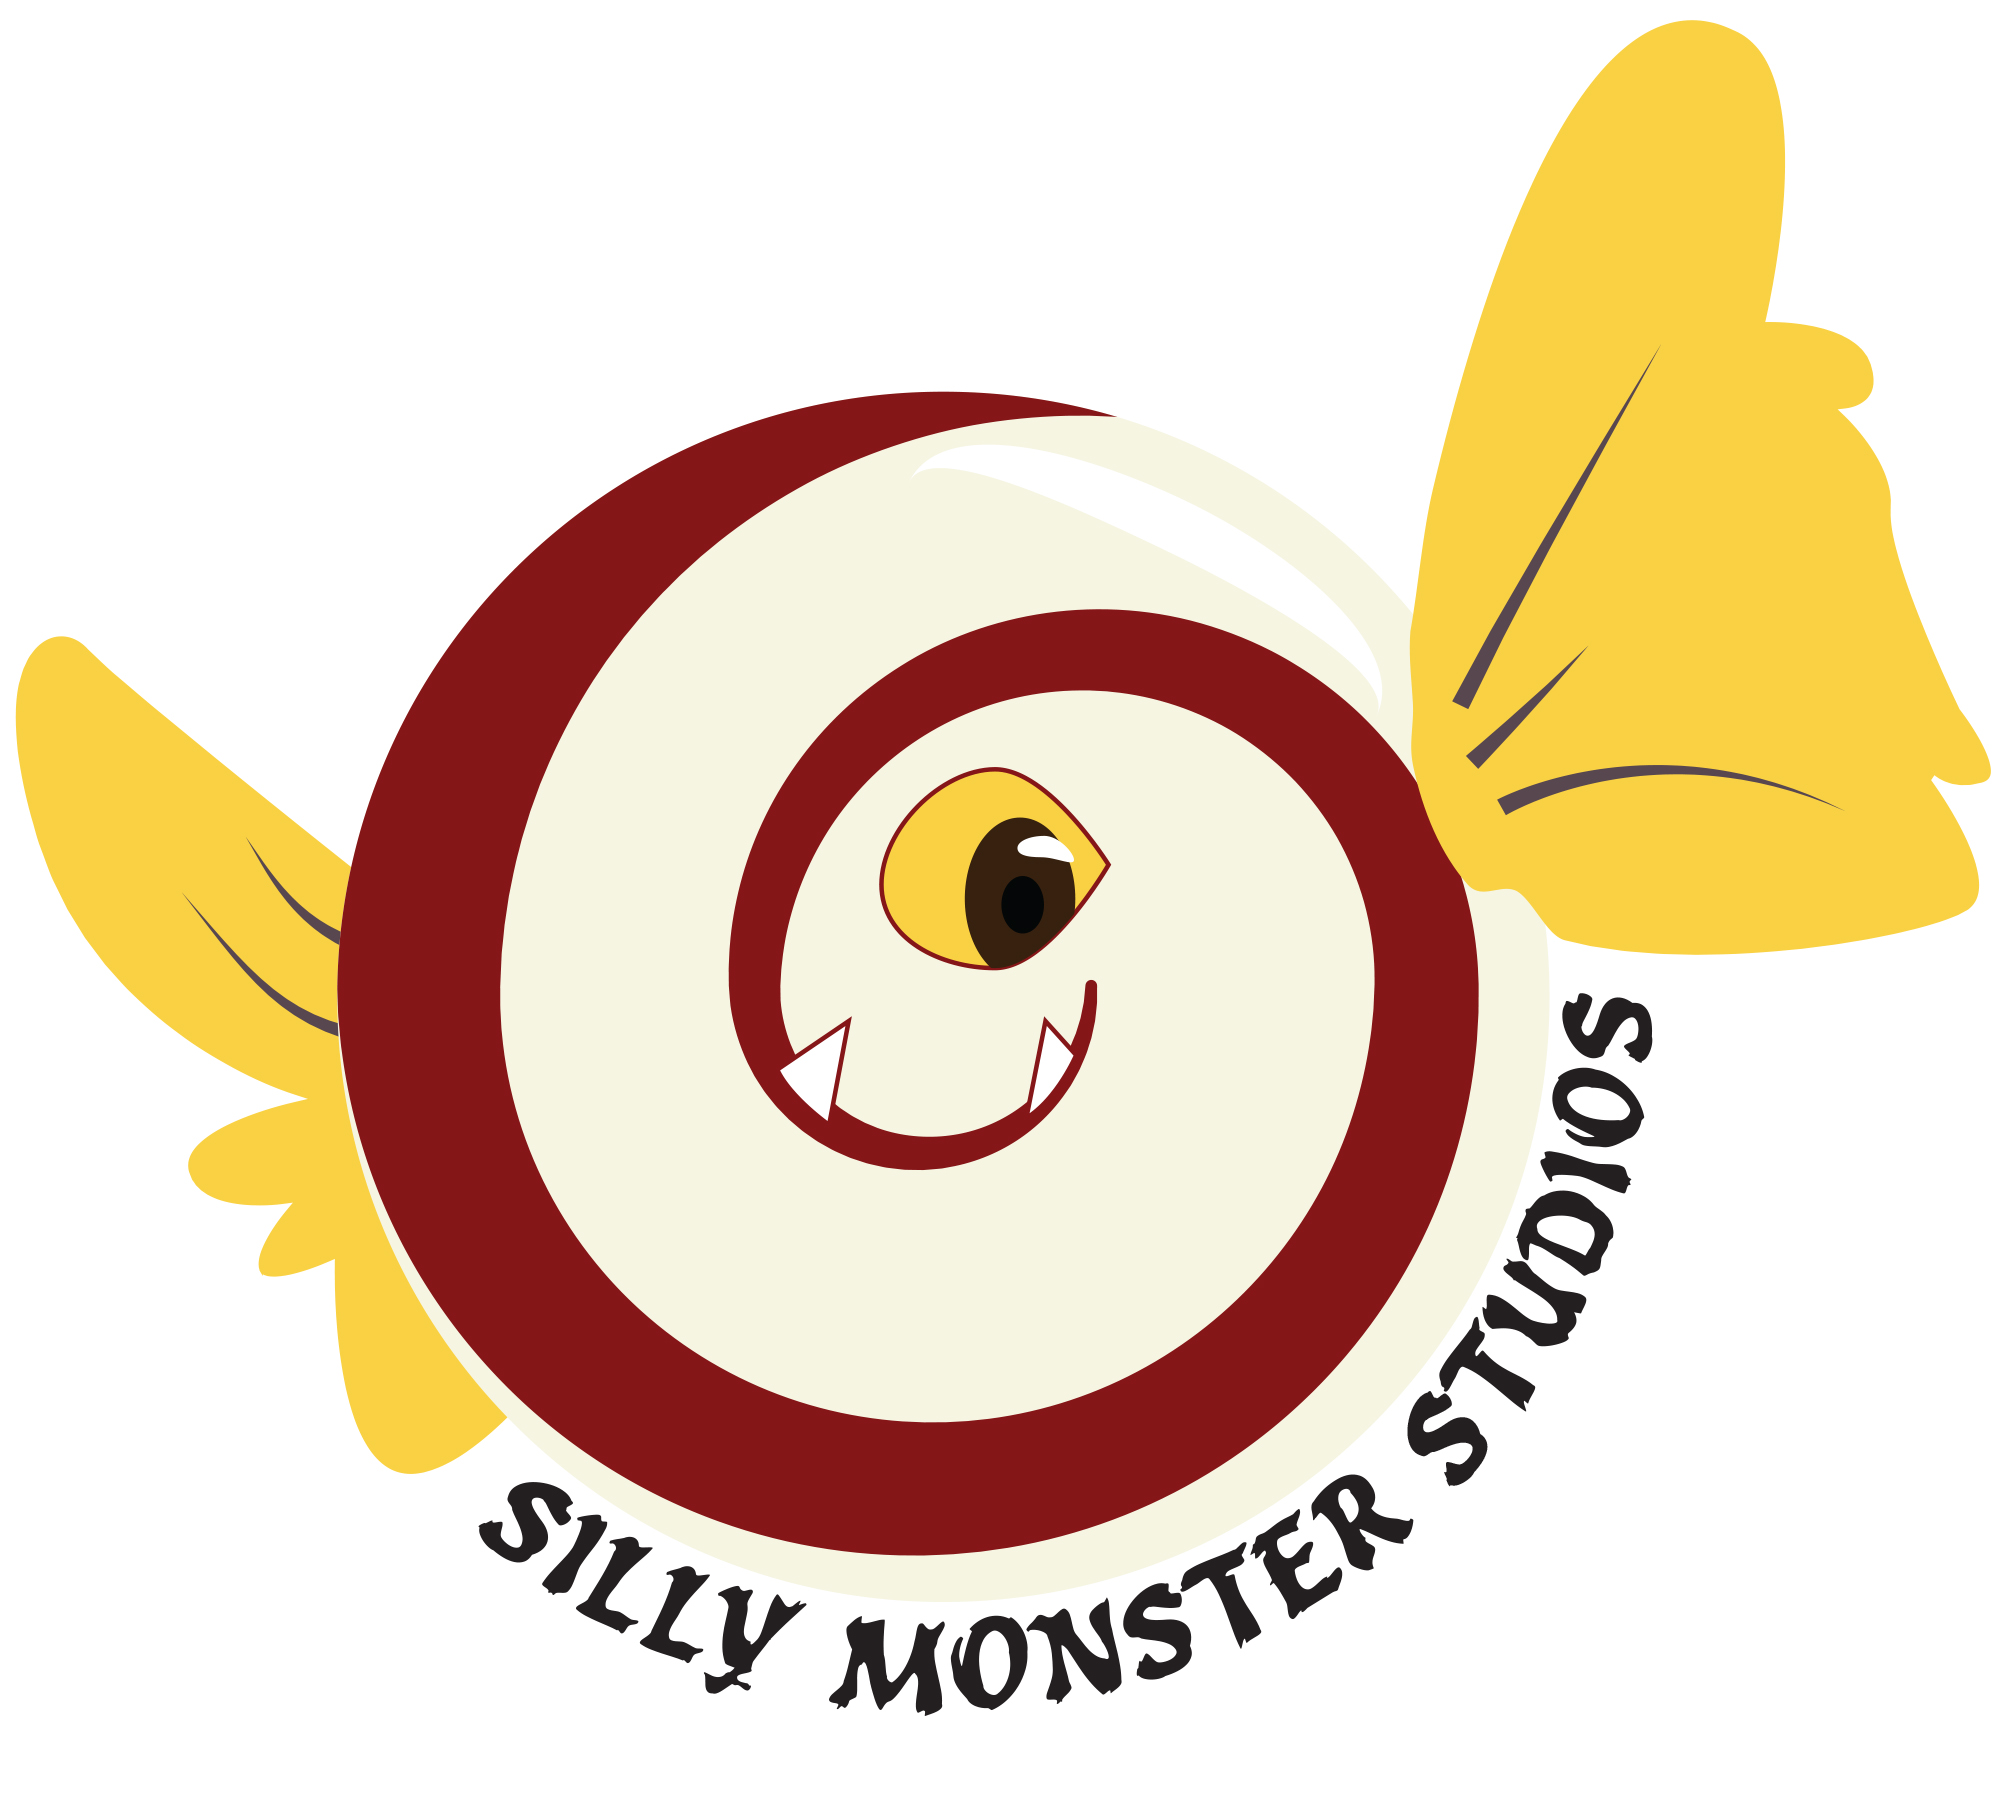 Silly Monster Studios logo